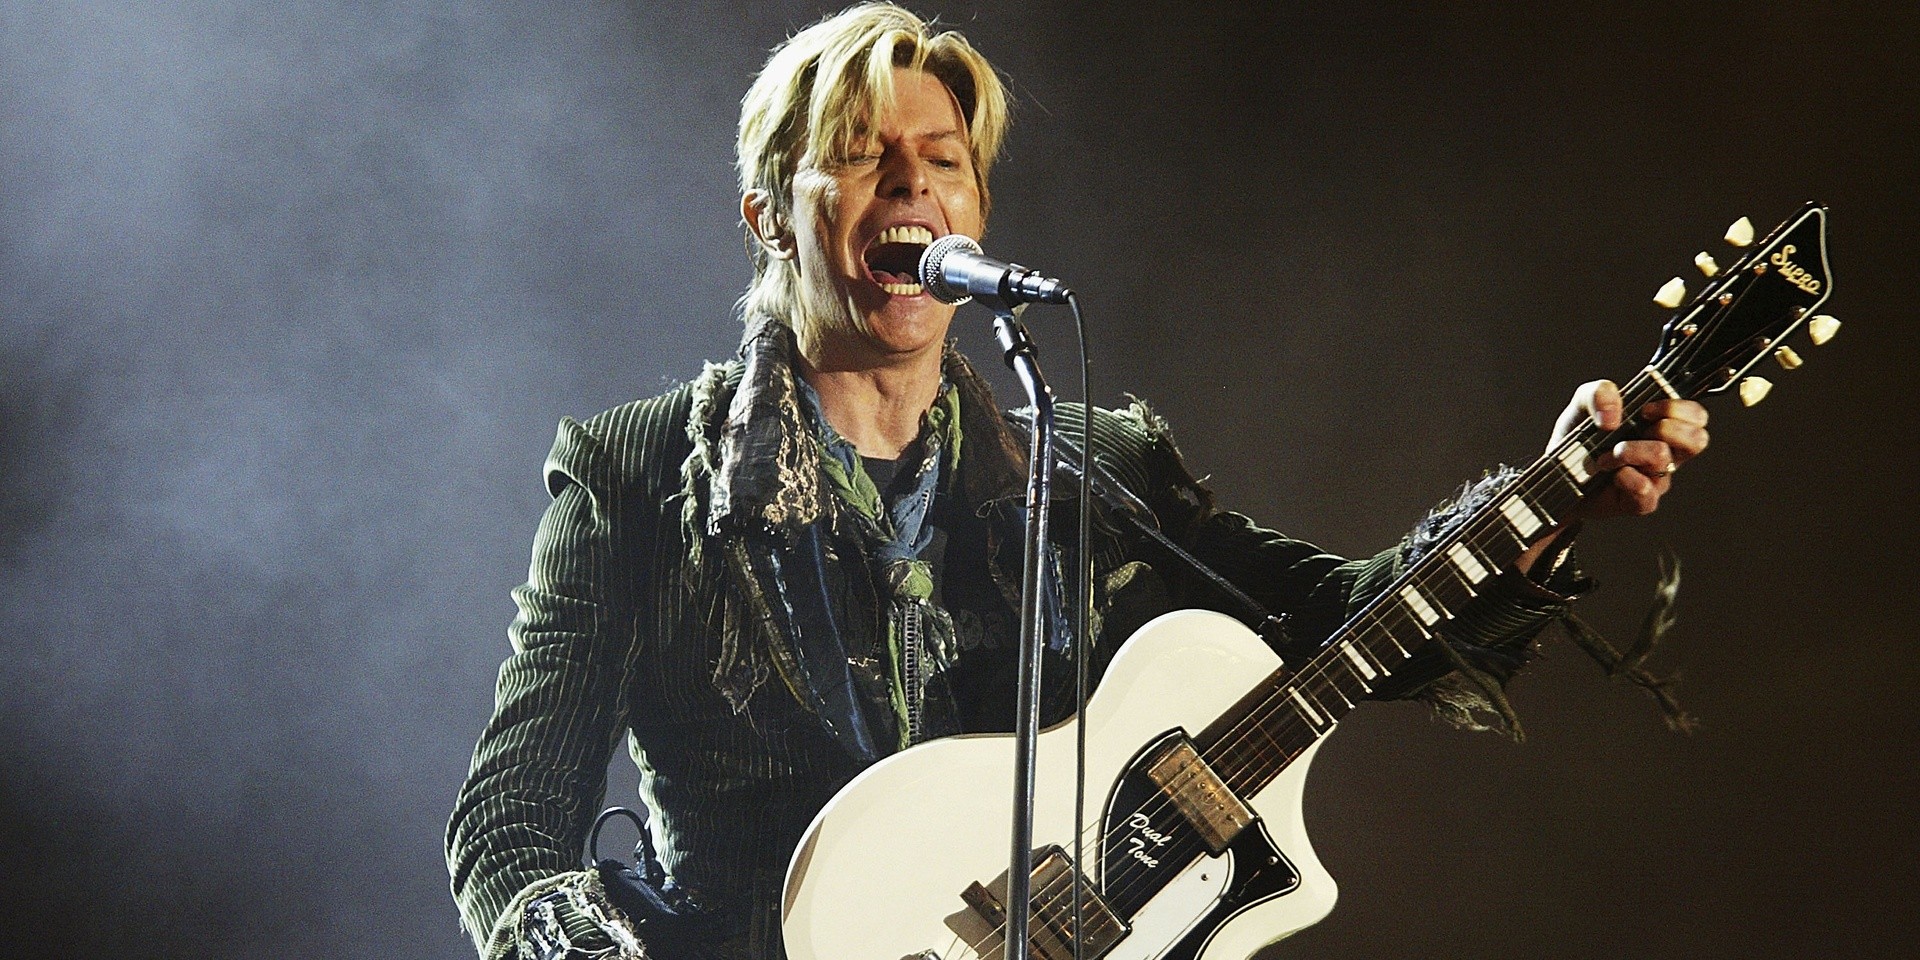 BREAKING: David Bowie has passed away